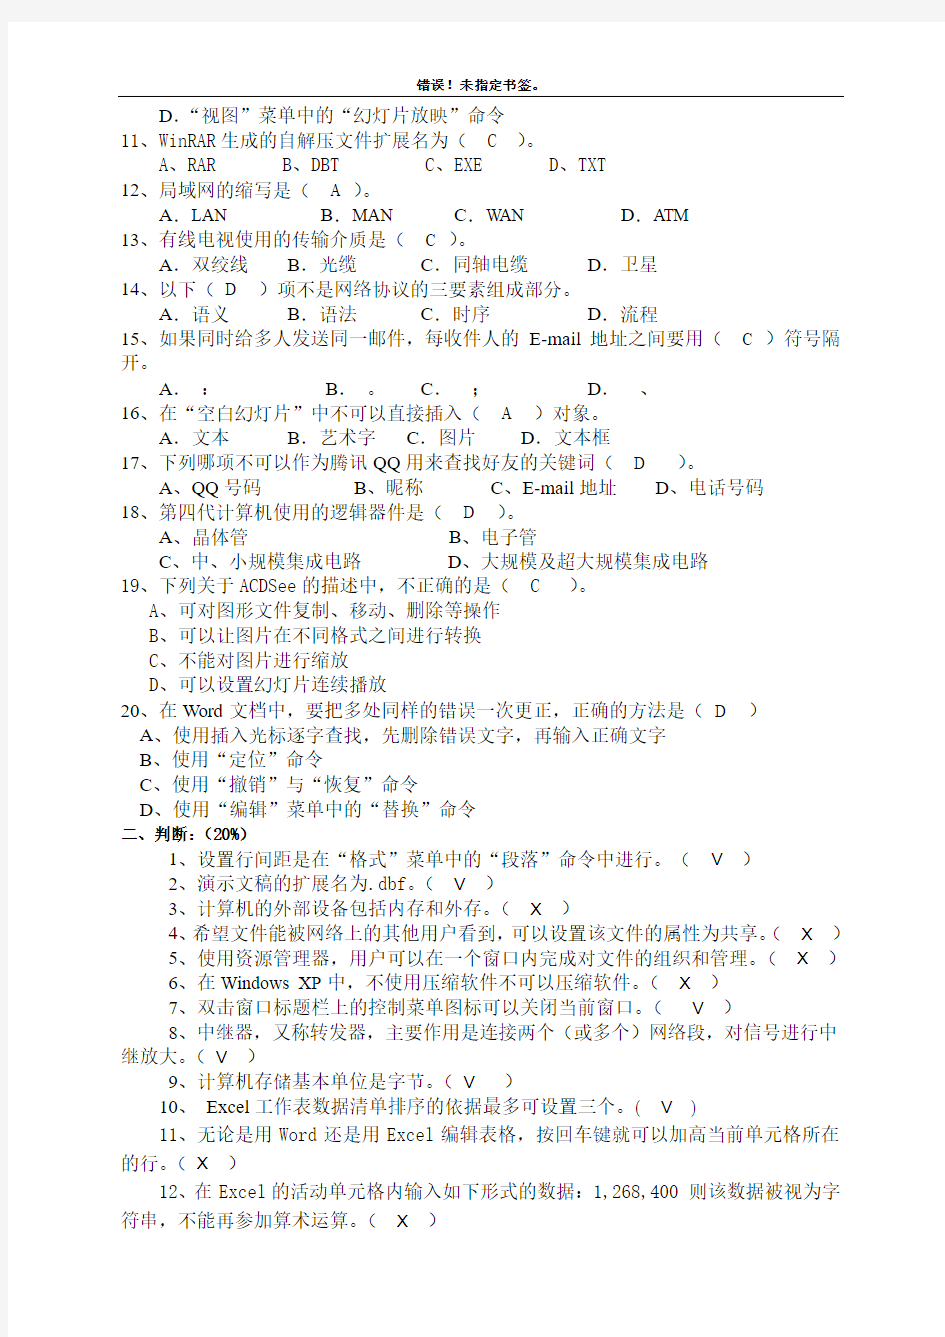 2010年天津市政工专业人员计算机应用能力考试(中级)基础知识部分D卷